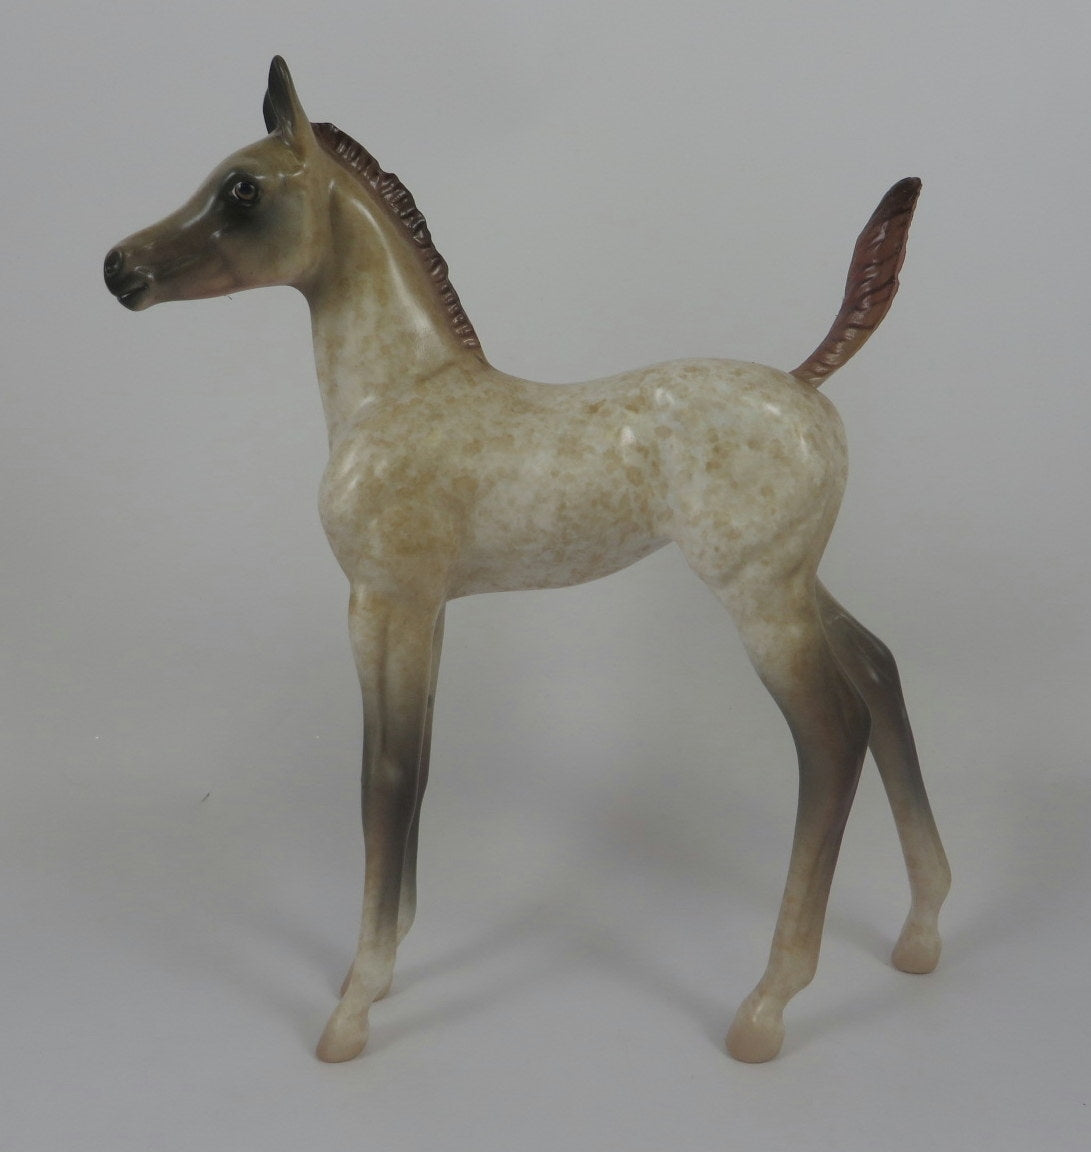 ROSALITA-OOAK RED ROAN FOAL MODEL HORSE BY AL LHS - Stone